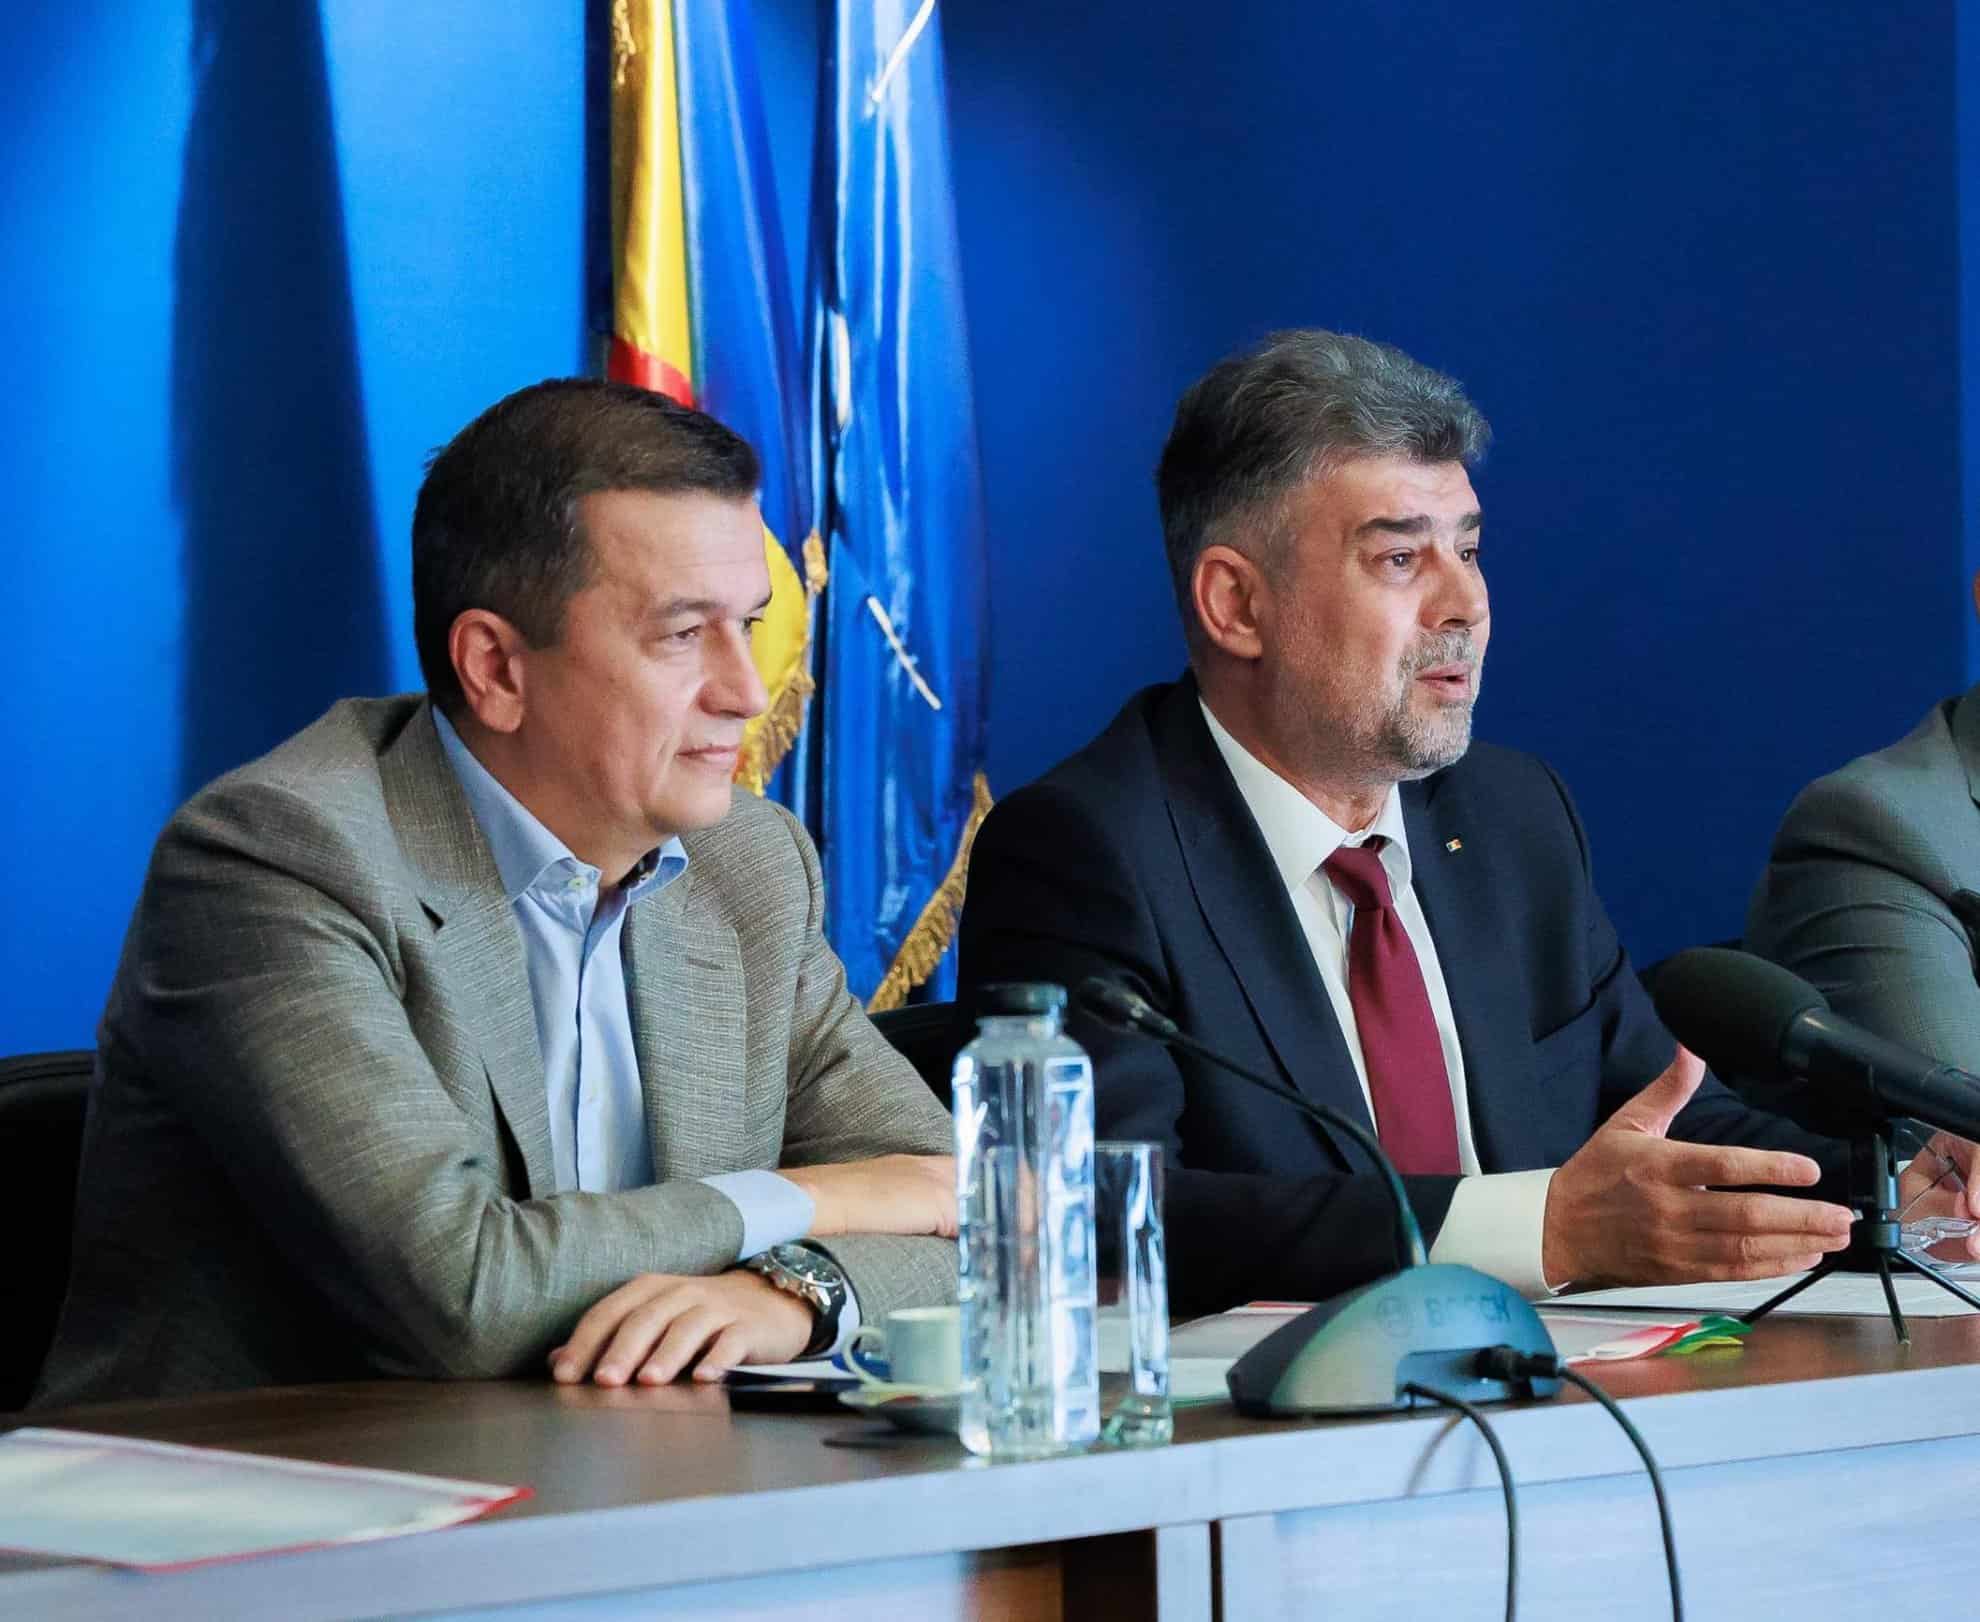 psd sibiu - ”s-a semnat contractul de execuție pentru tronsonul iv al autostrăzii sibiu - făgăraș” (c.p)